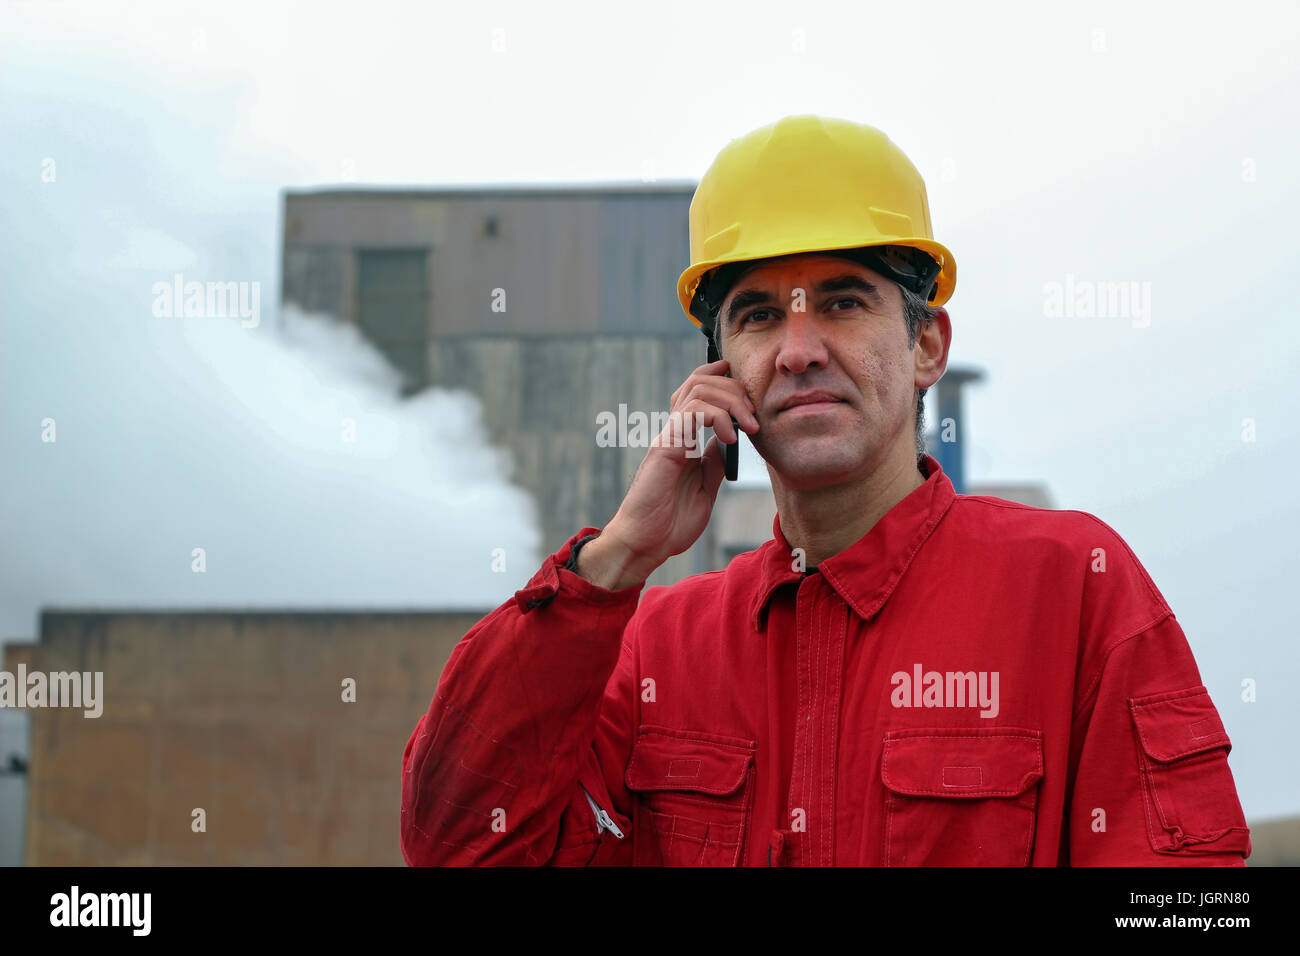 Ein Portrait eines Arbeitnehmers im roten Overall und gelben Helm mit Handy vor dem Schornstein Rauchen. Stockfoto